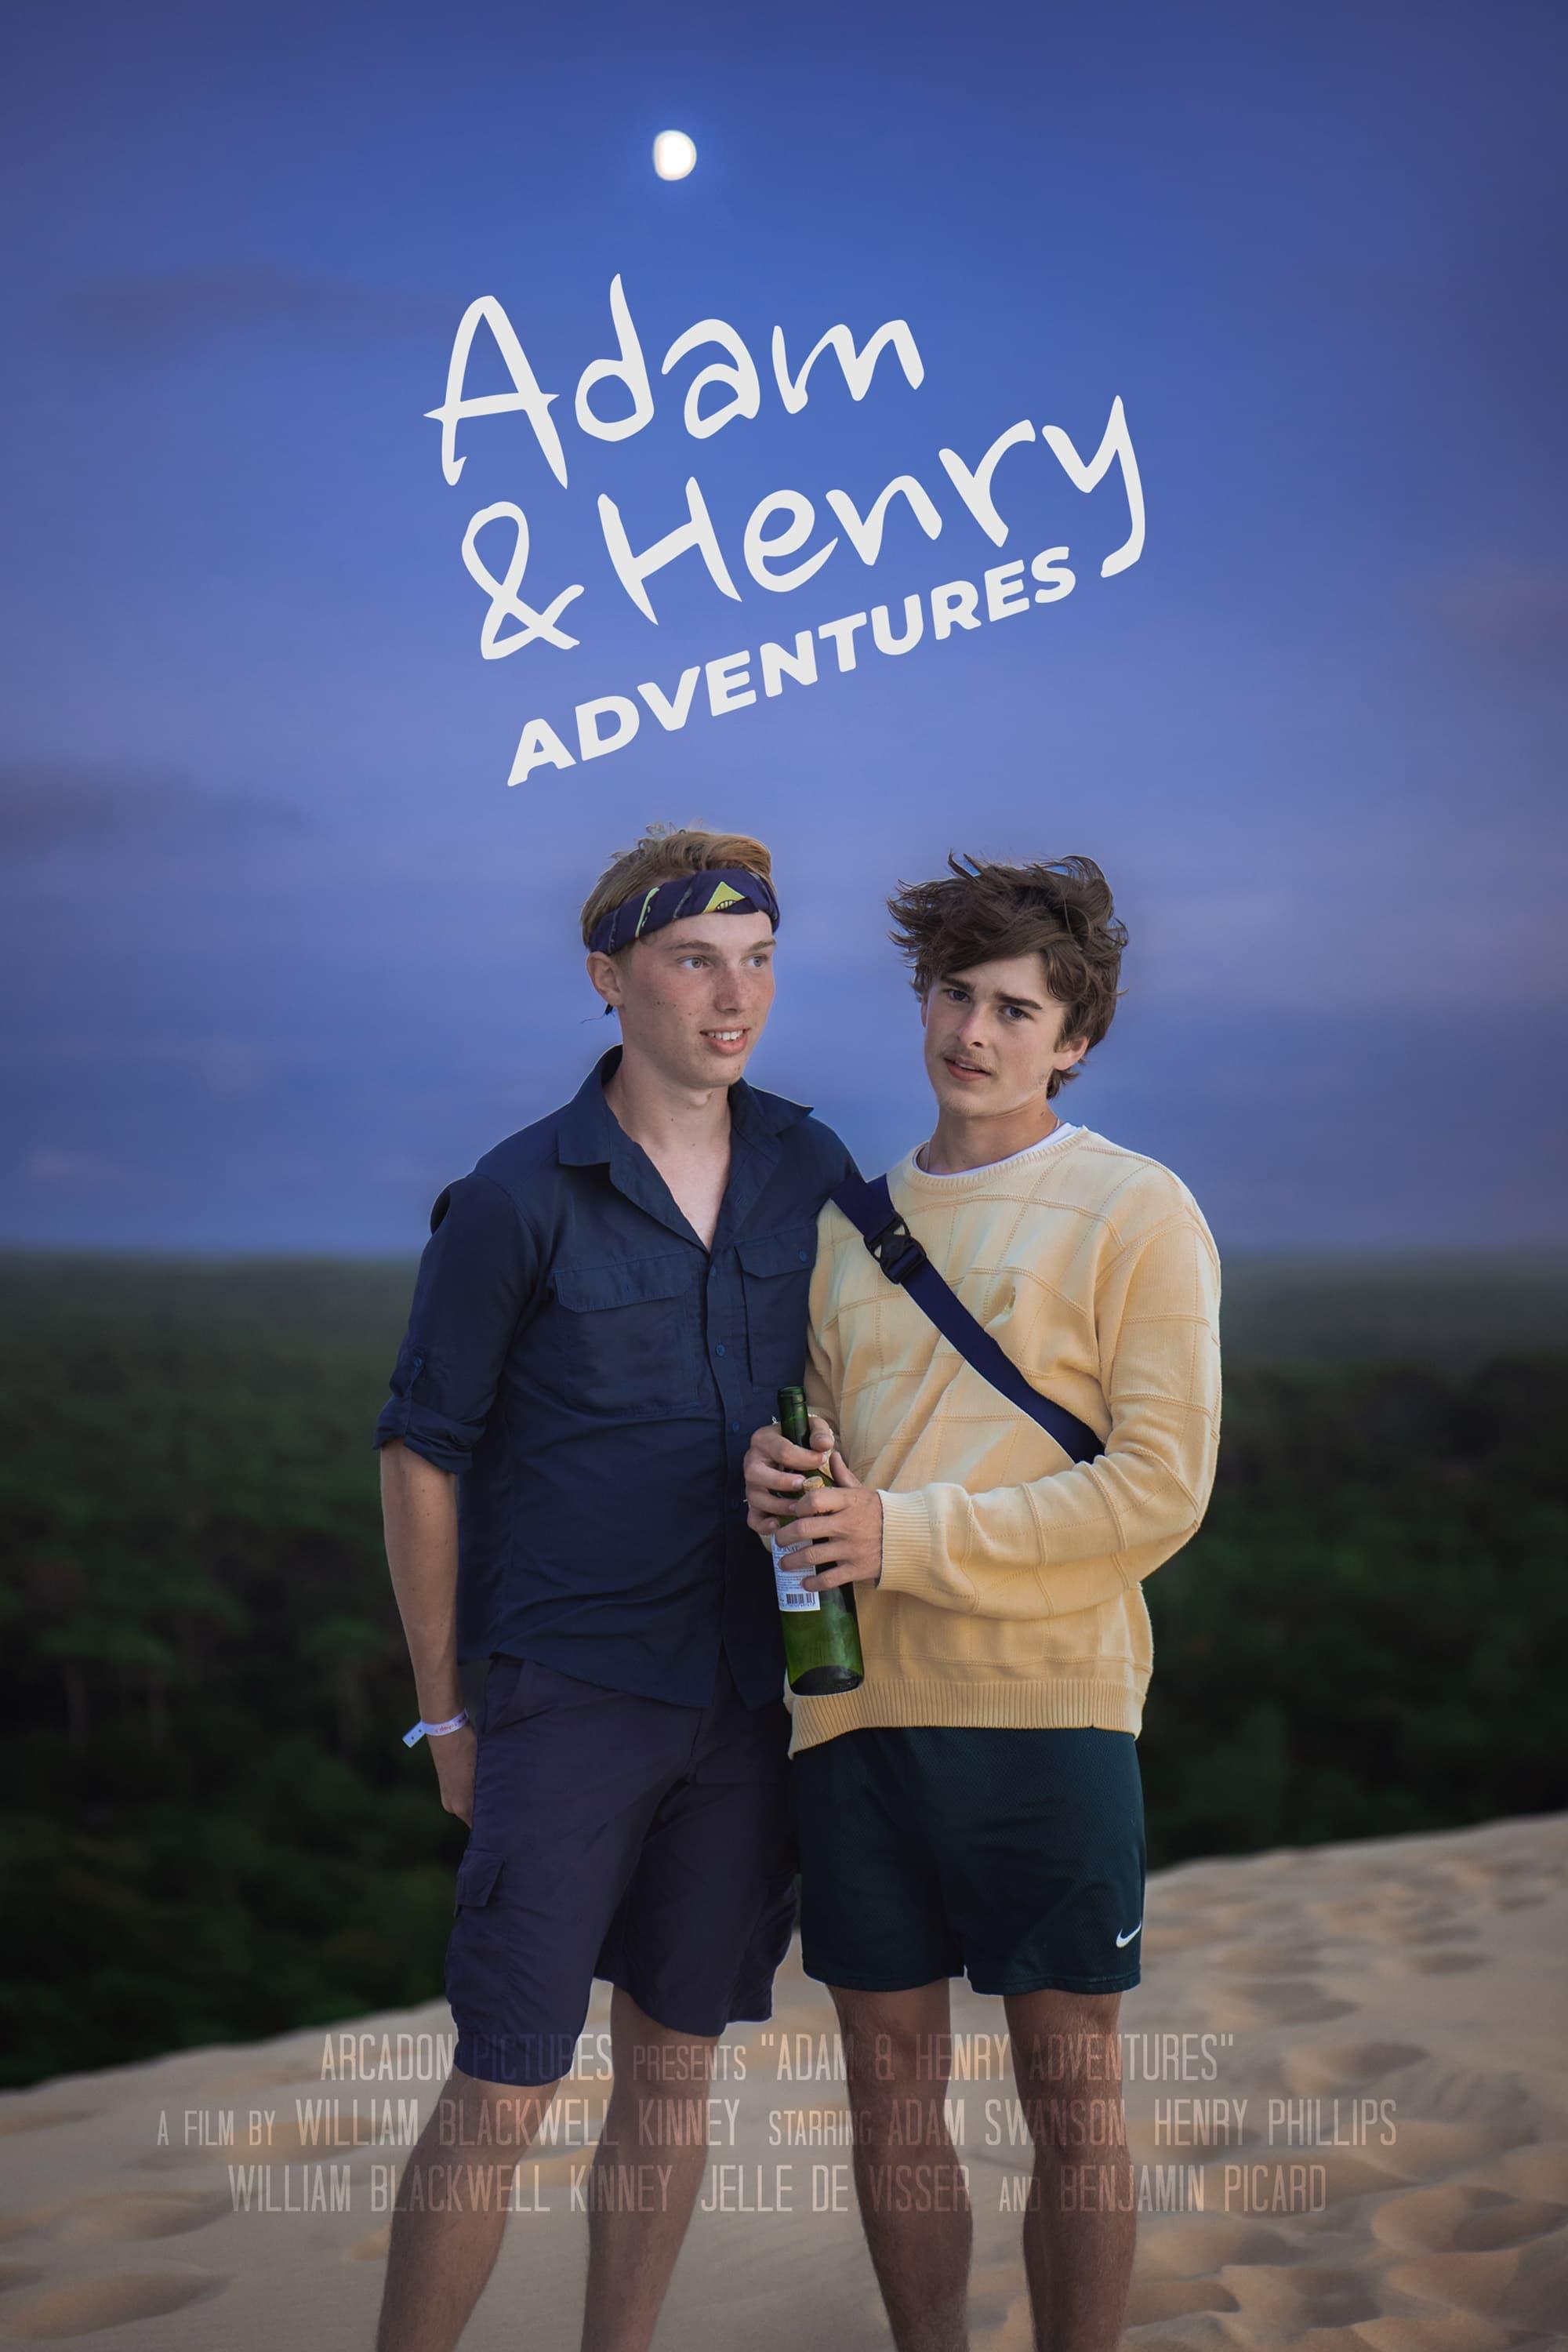 Adam & Henry Adventures poster